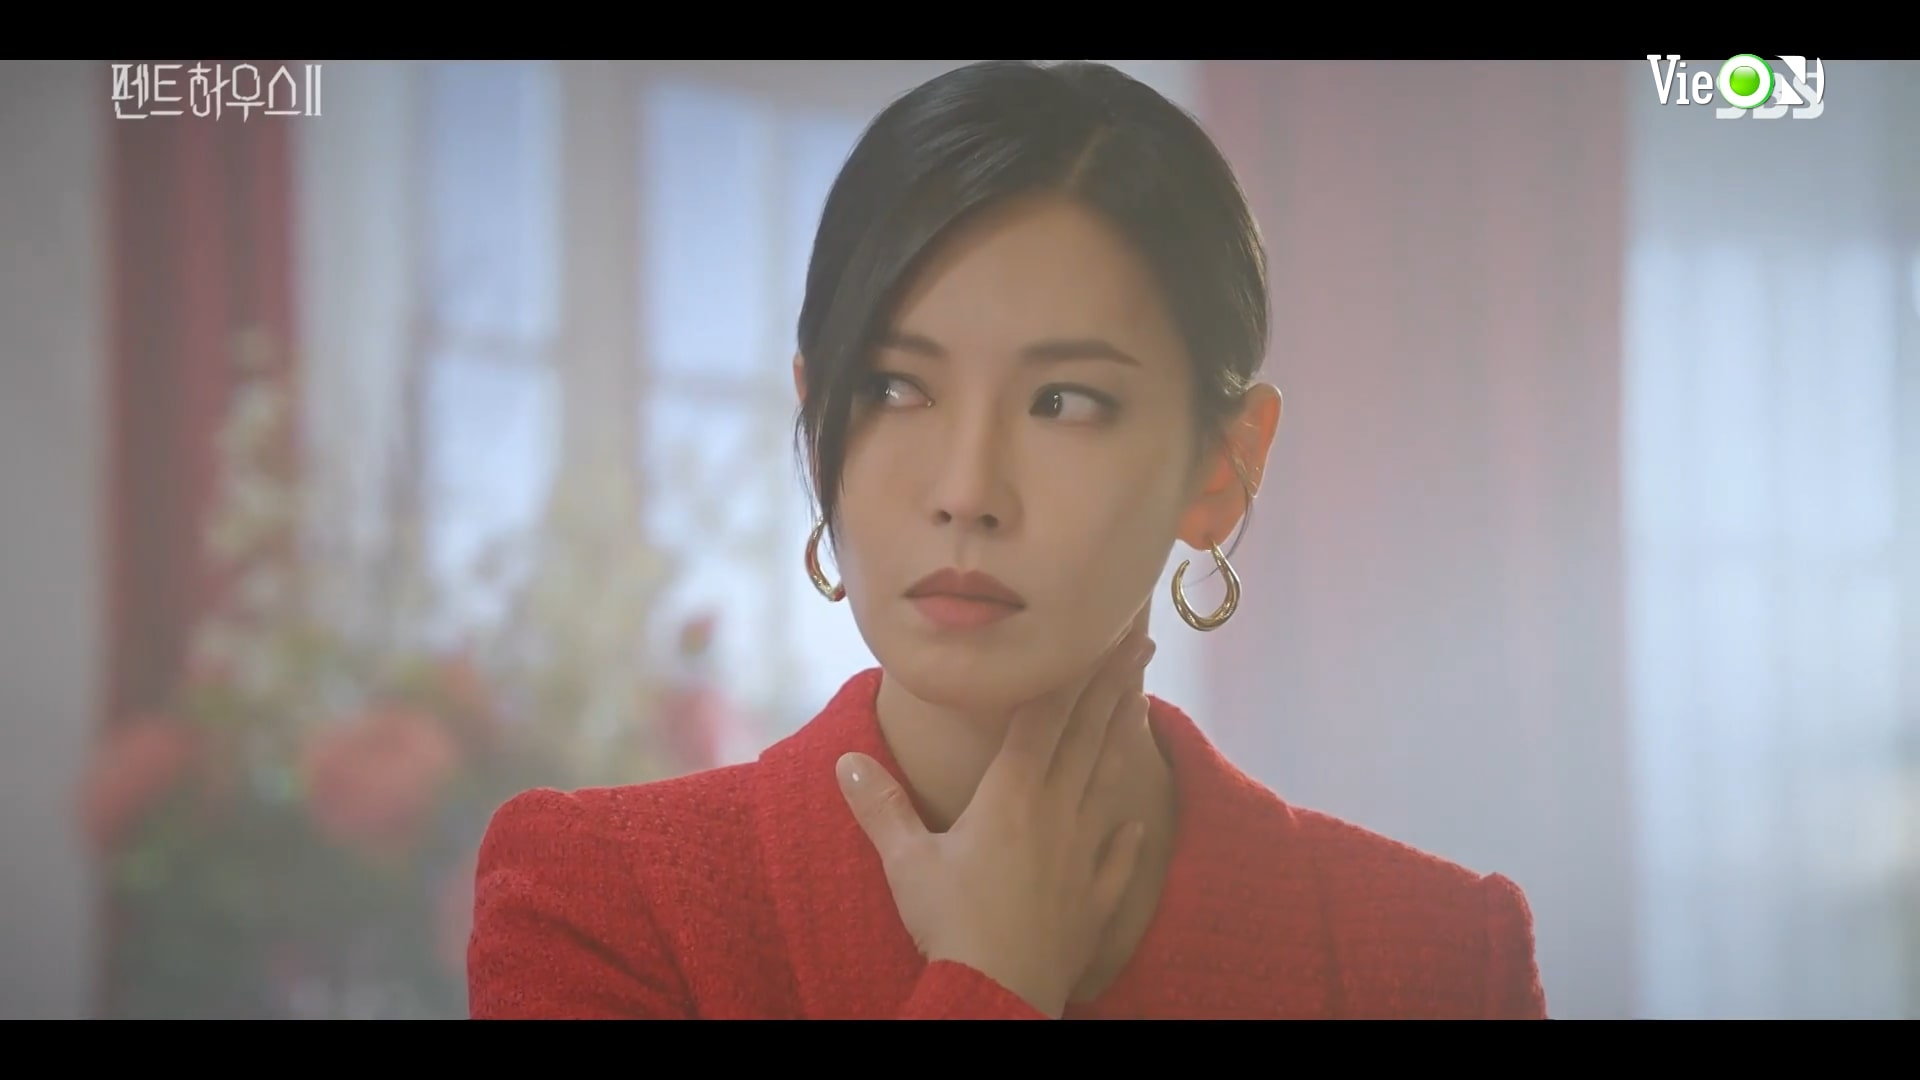 Cổ họng gặp vấn đề khiến Cheon Seo Jin không thể lên nốt cao như trước.